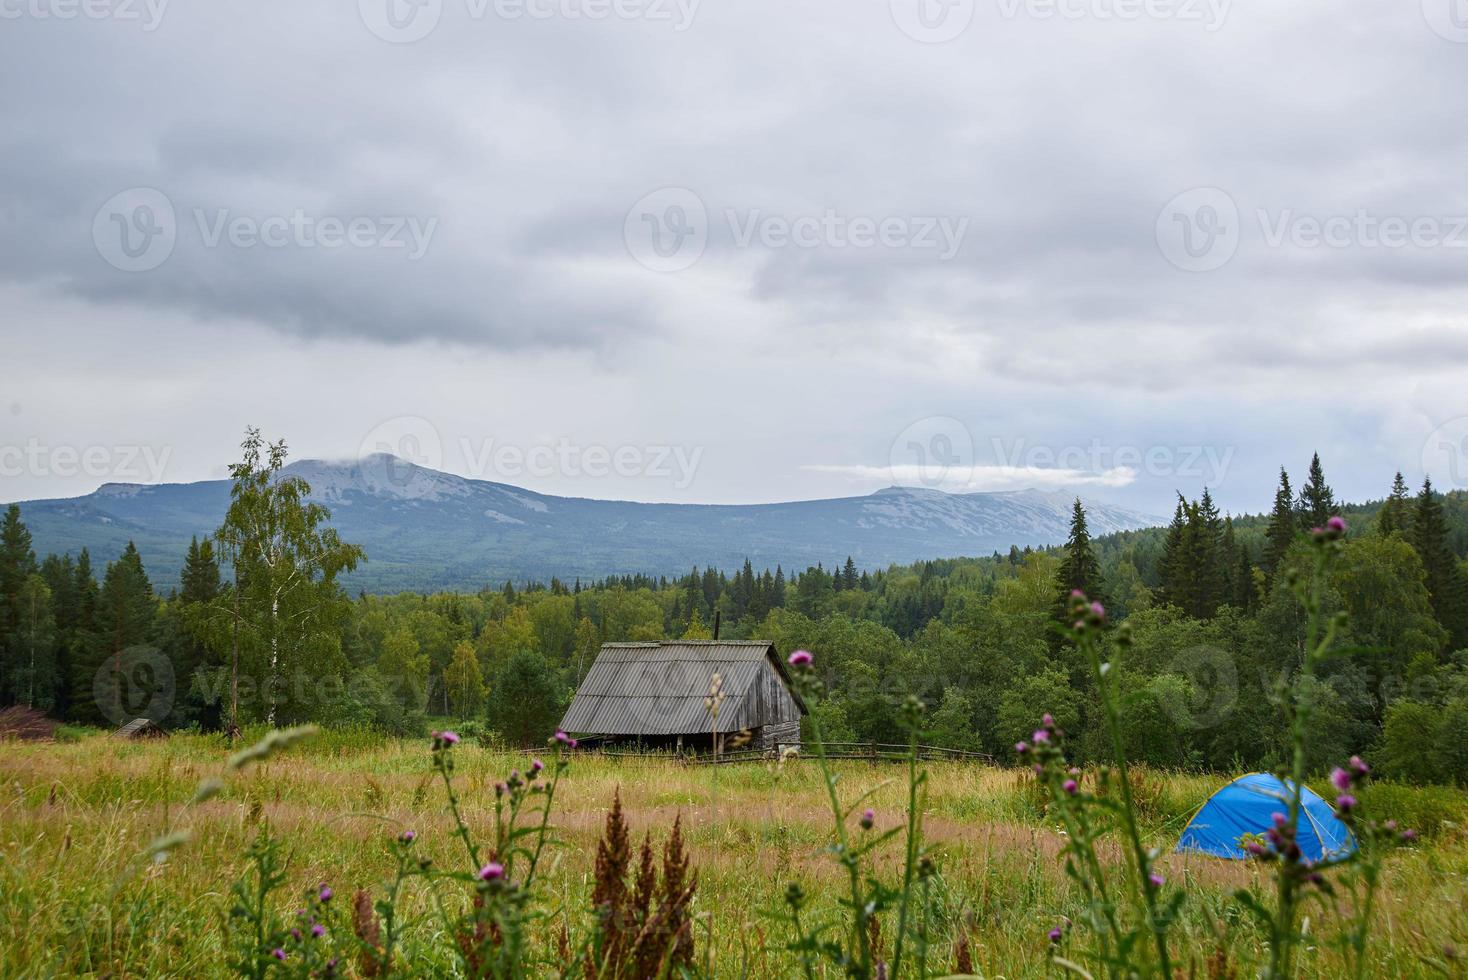 paysage, pré vert, tente bleue, maison en bois, herbes des champs, belle vue sur les sommets des montagnes dans les nuages. photo